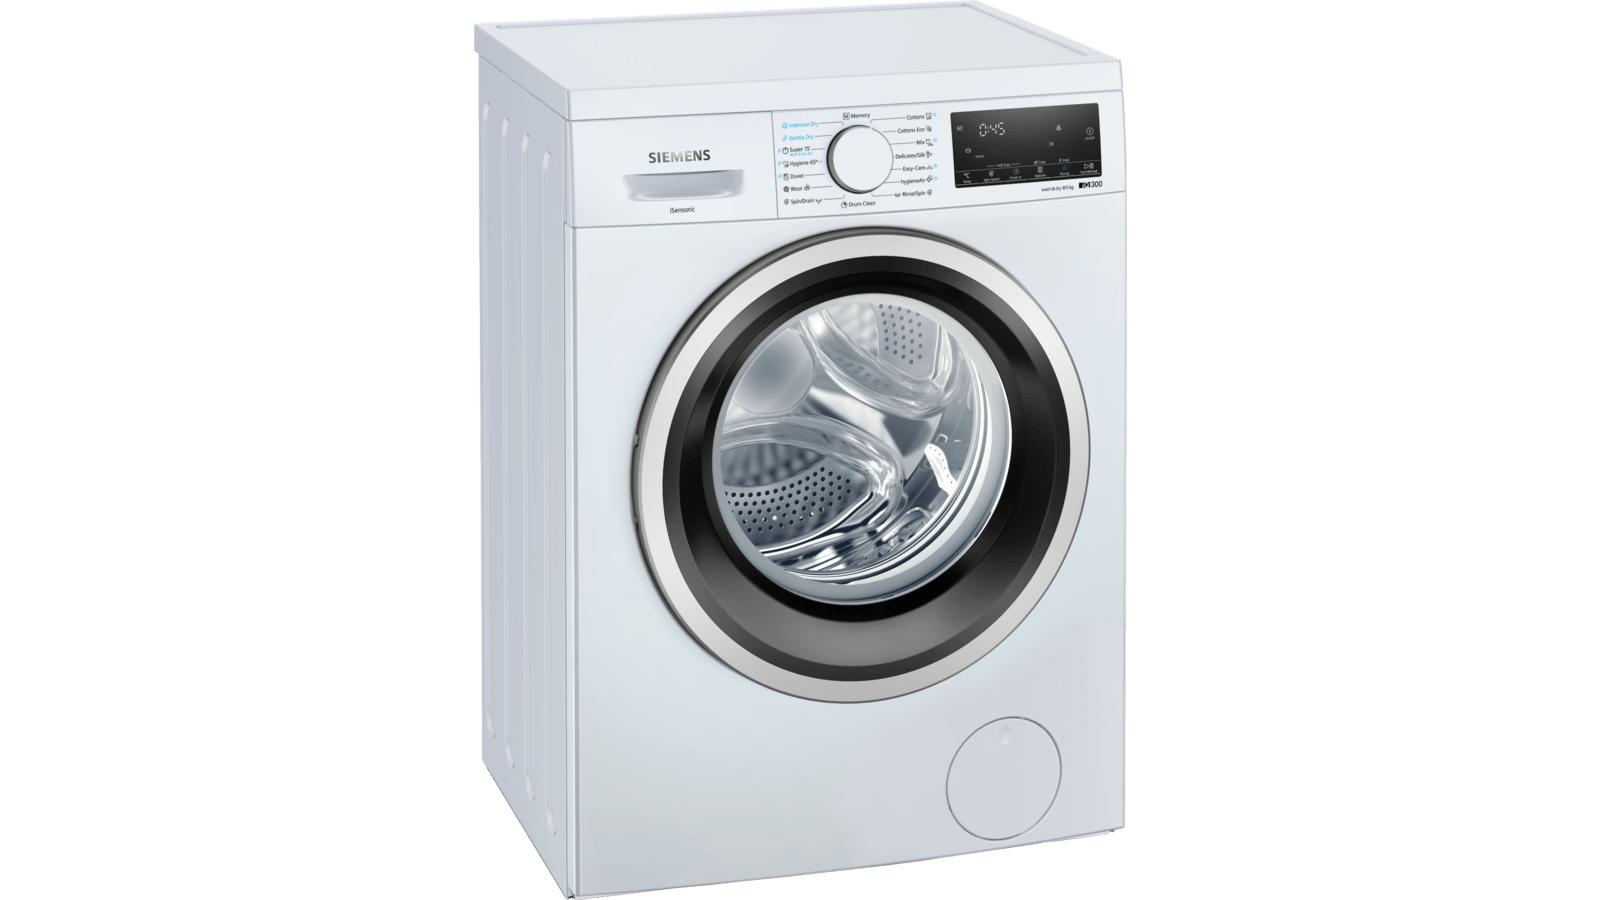 WD14S468HK 洗衣乾衣機| Siemens Home Appliances HK